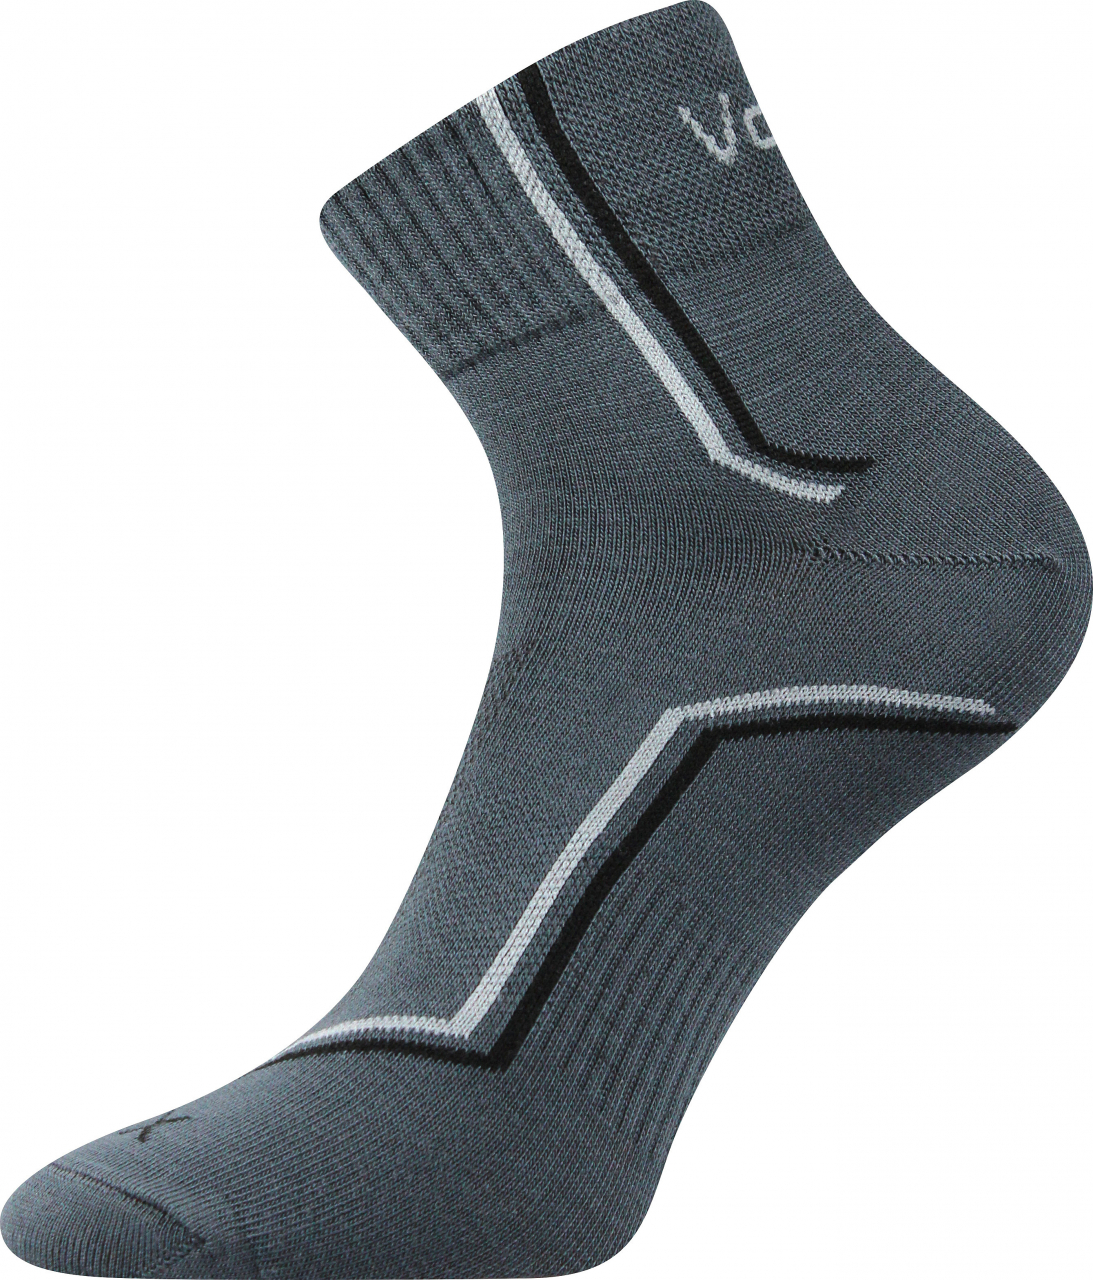 Ponožky sportovní Voxx Kroton silproX - tmavě šedé, 43-46